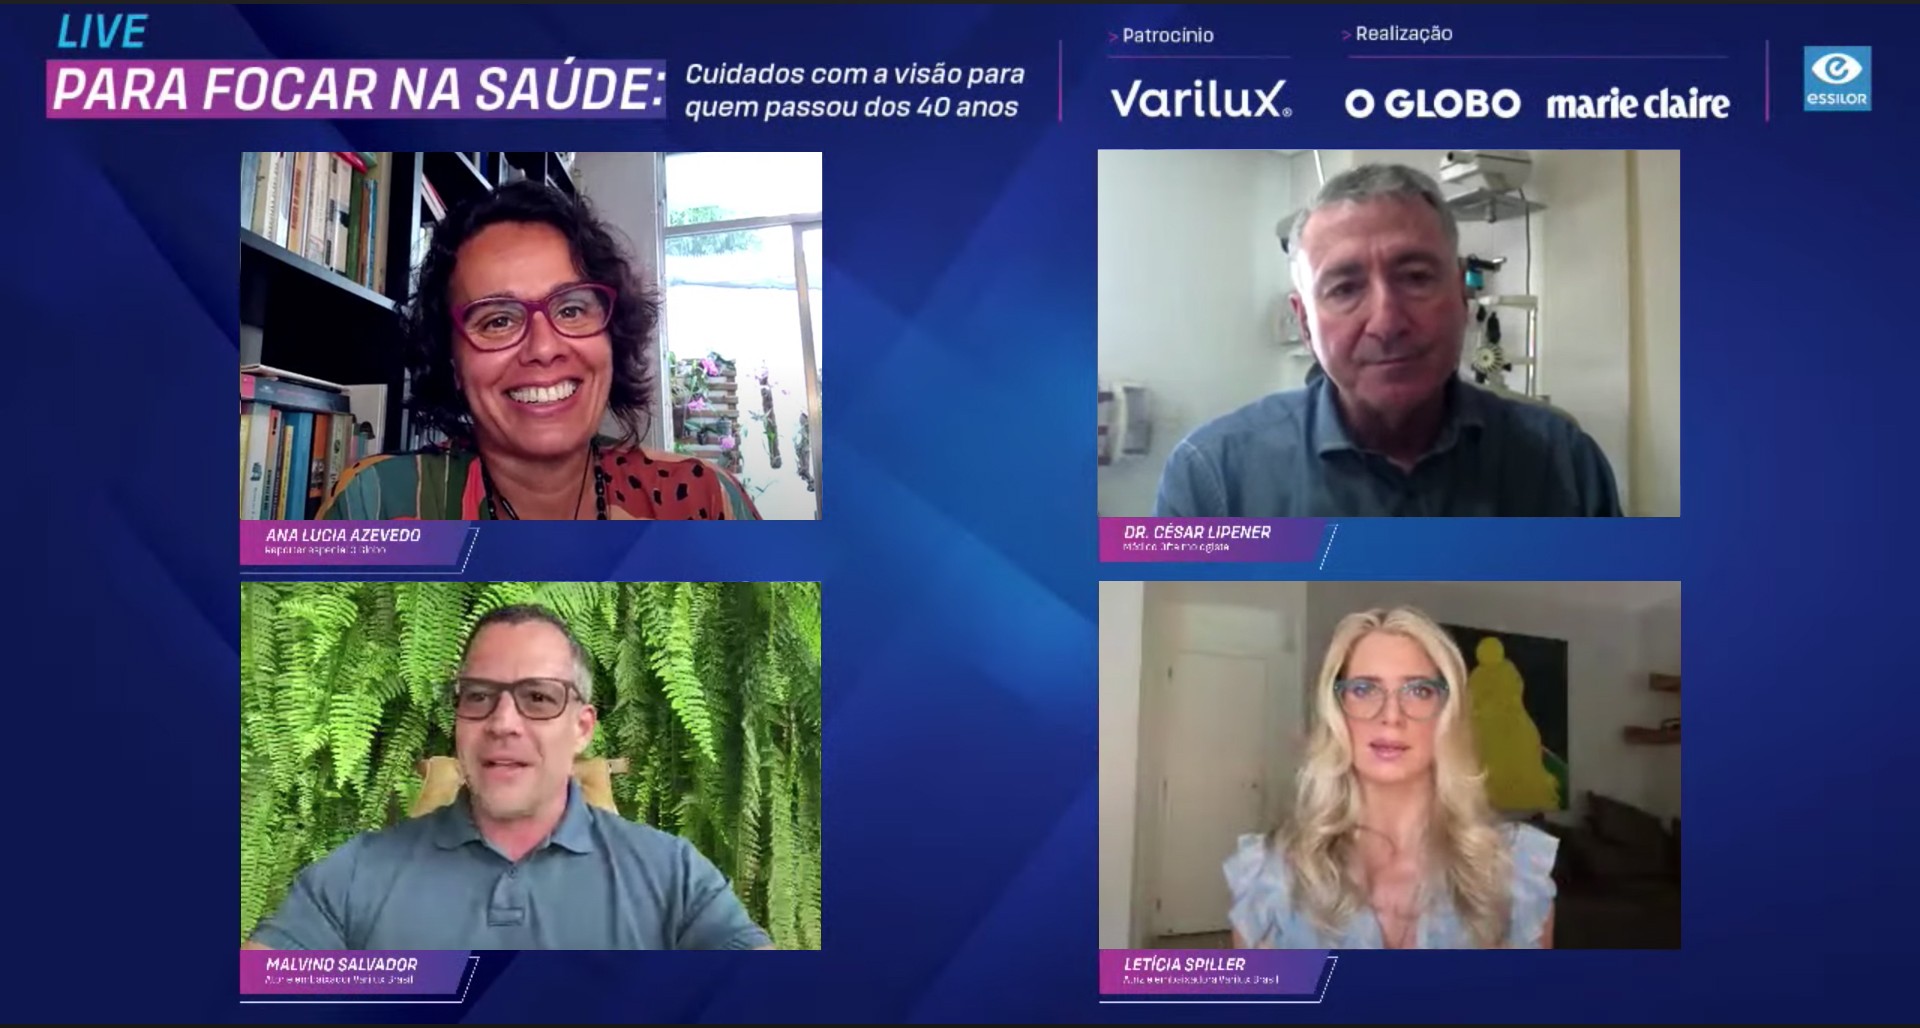 Letícia Spiller e Malvino Salvador, embaixadores da Varilux, dividiram experiência sobre adaptação às lentes (Foto: Reprodução)